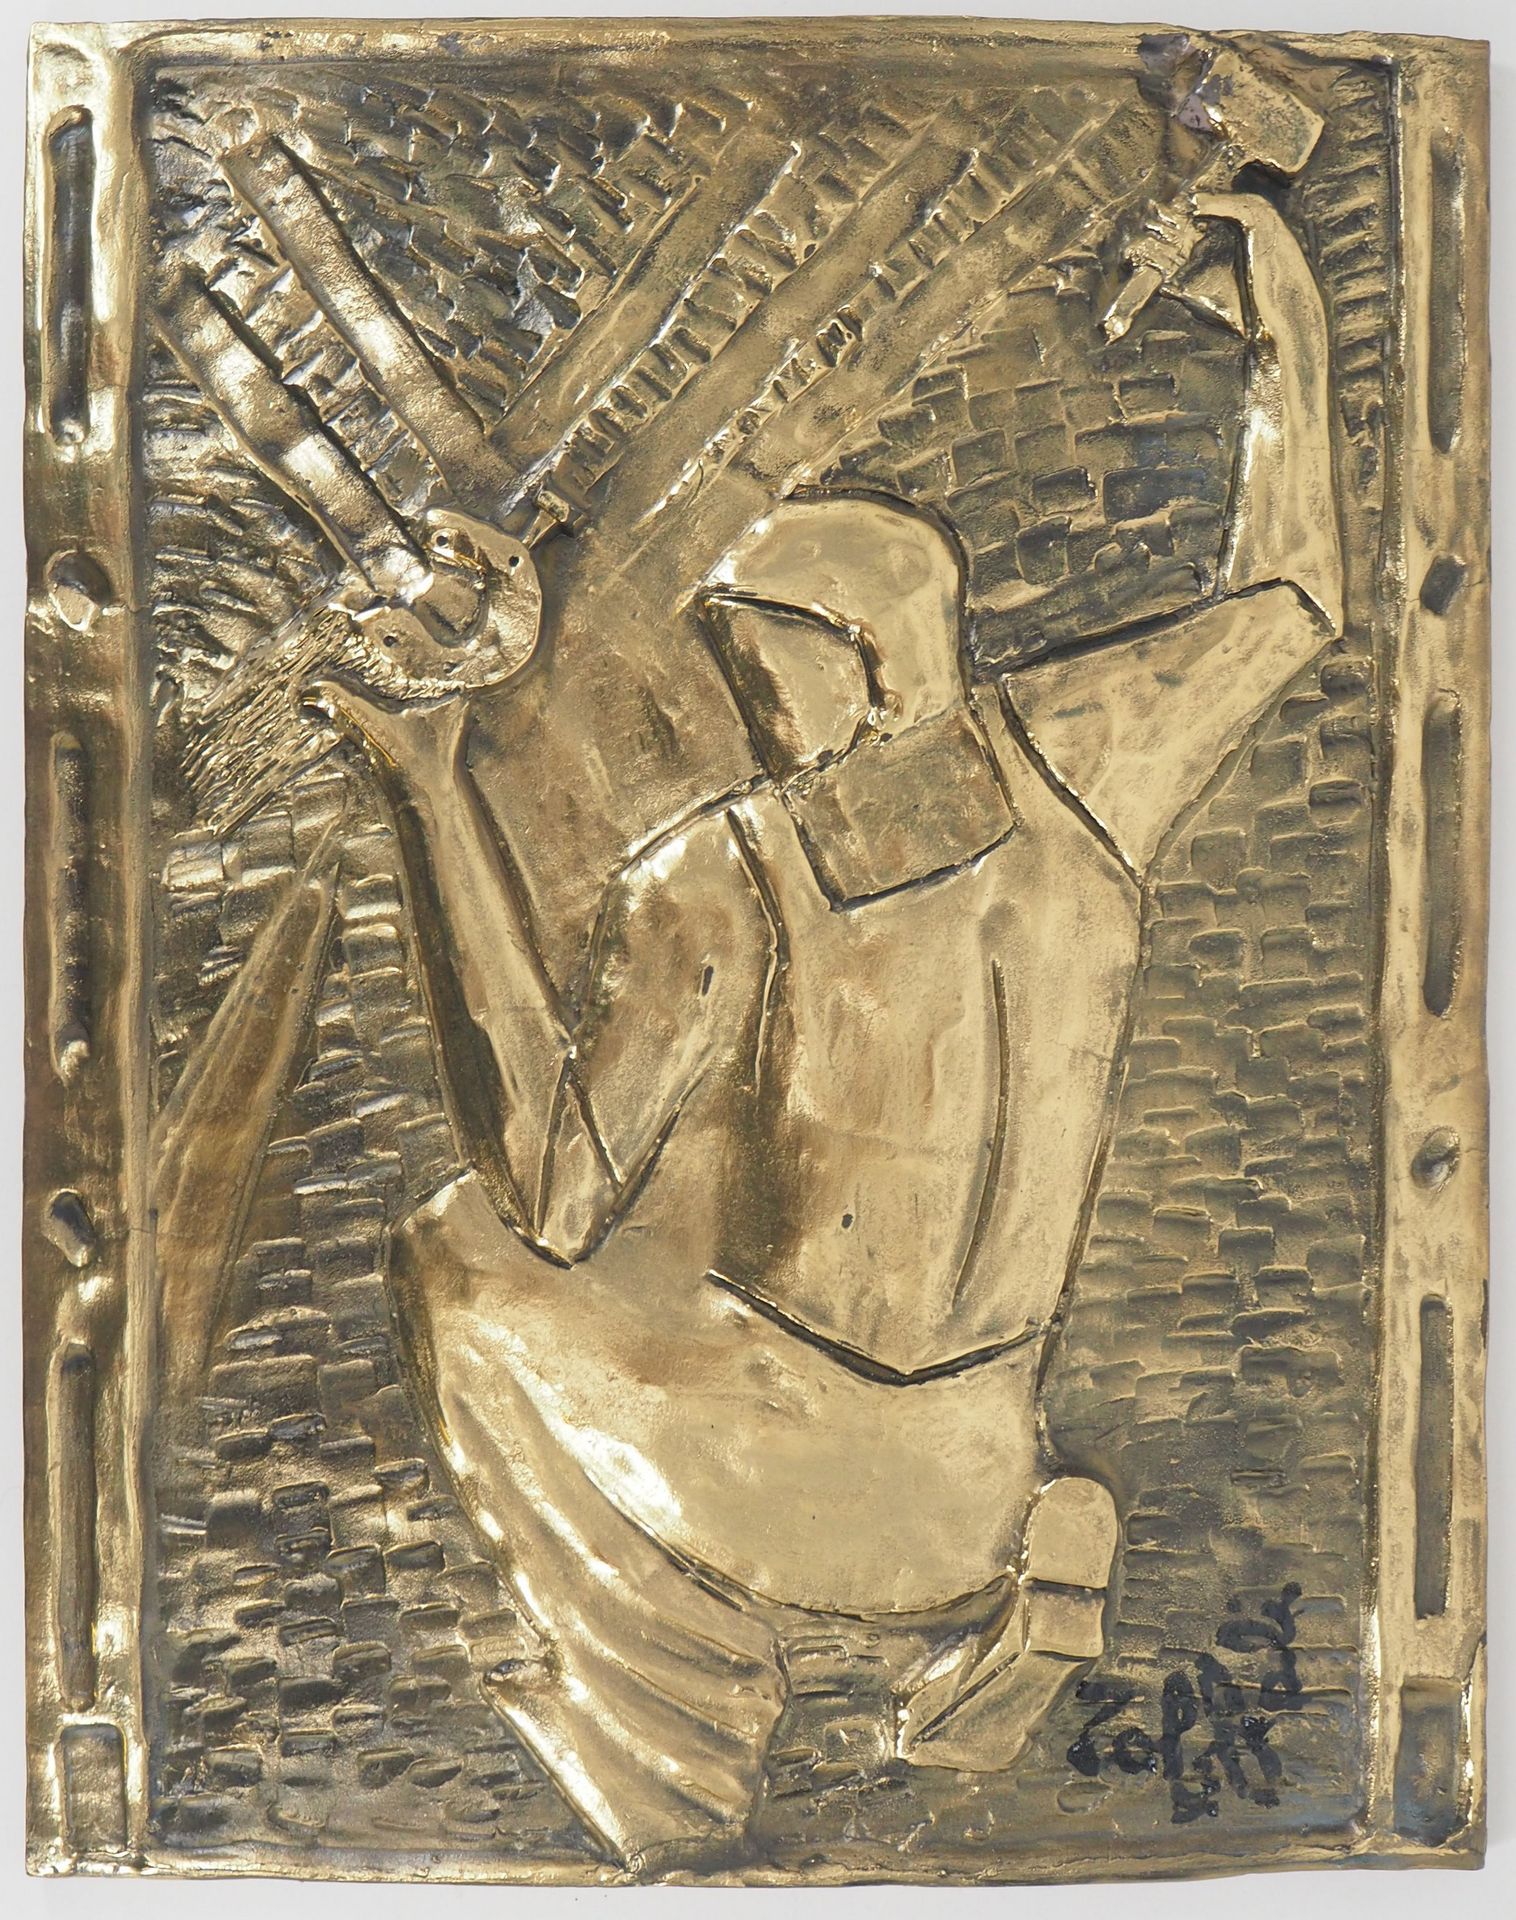 Louis TOFFOLI 路易斯-托福里

农夫》，1986年

古铜色的低浮雕

右下方有签名

铜制 65 x 51厘米（约3厘米厚）。

限量295册（&hellip;